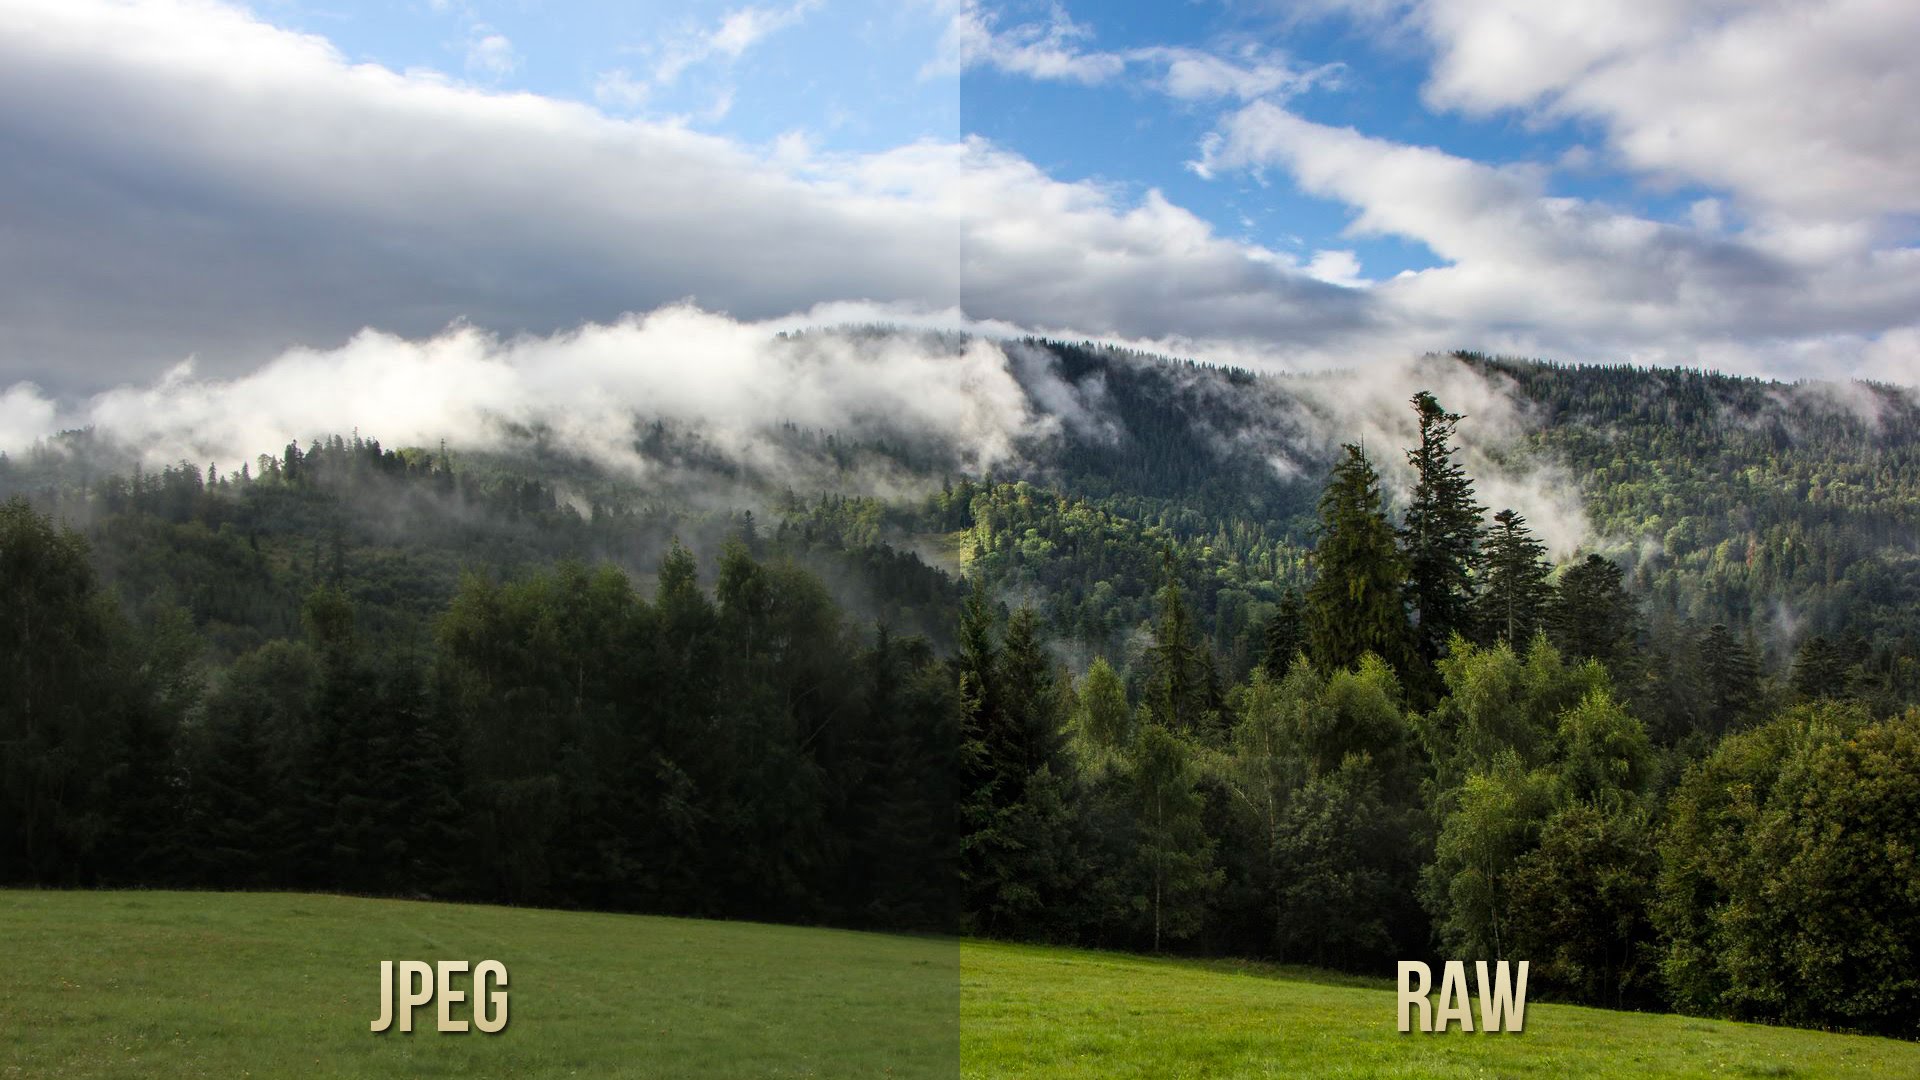 На самом деле сравнивать RAW и JPEG напрямую некорректно: JPEG всегда выглядит одинаково, тогда как отображение RAW может варьироваться в зависимости от применённых в данный момент настроек. Тем не менее в таком сопоставлении есть смысл: JPEG без потерь уже не изменишь, тогда как RAW всегда можно отобразить лучше, поиграв с параметрами!